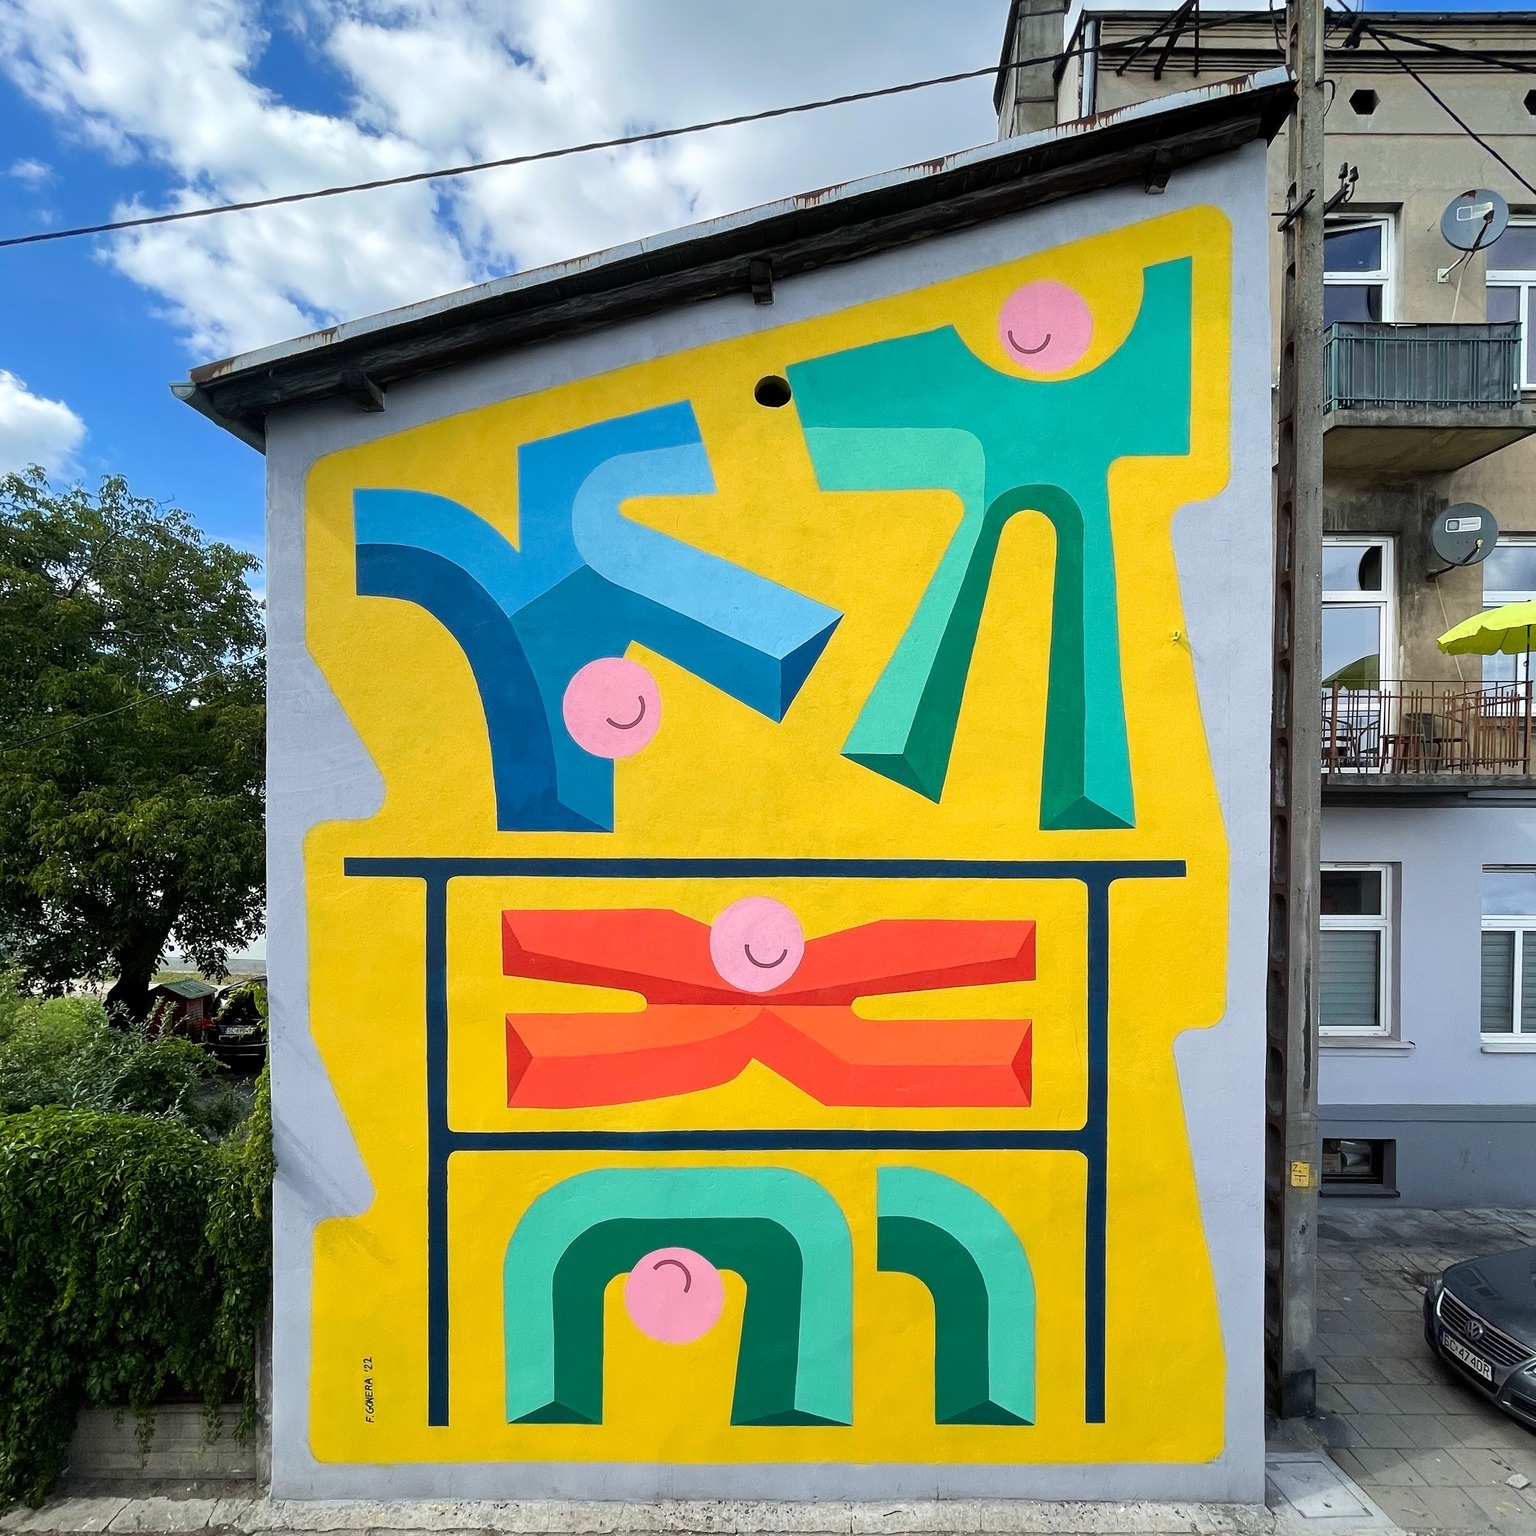 Widzieliście już nowy mural na ul. Mielczarskiego? To zapowiedź Festiwalu eFKA 2022 10